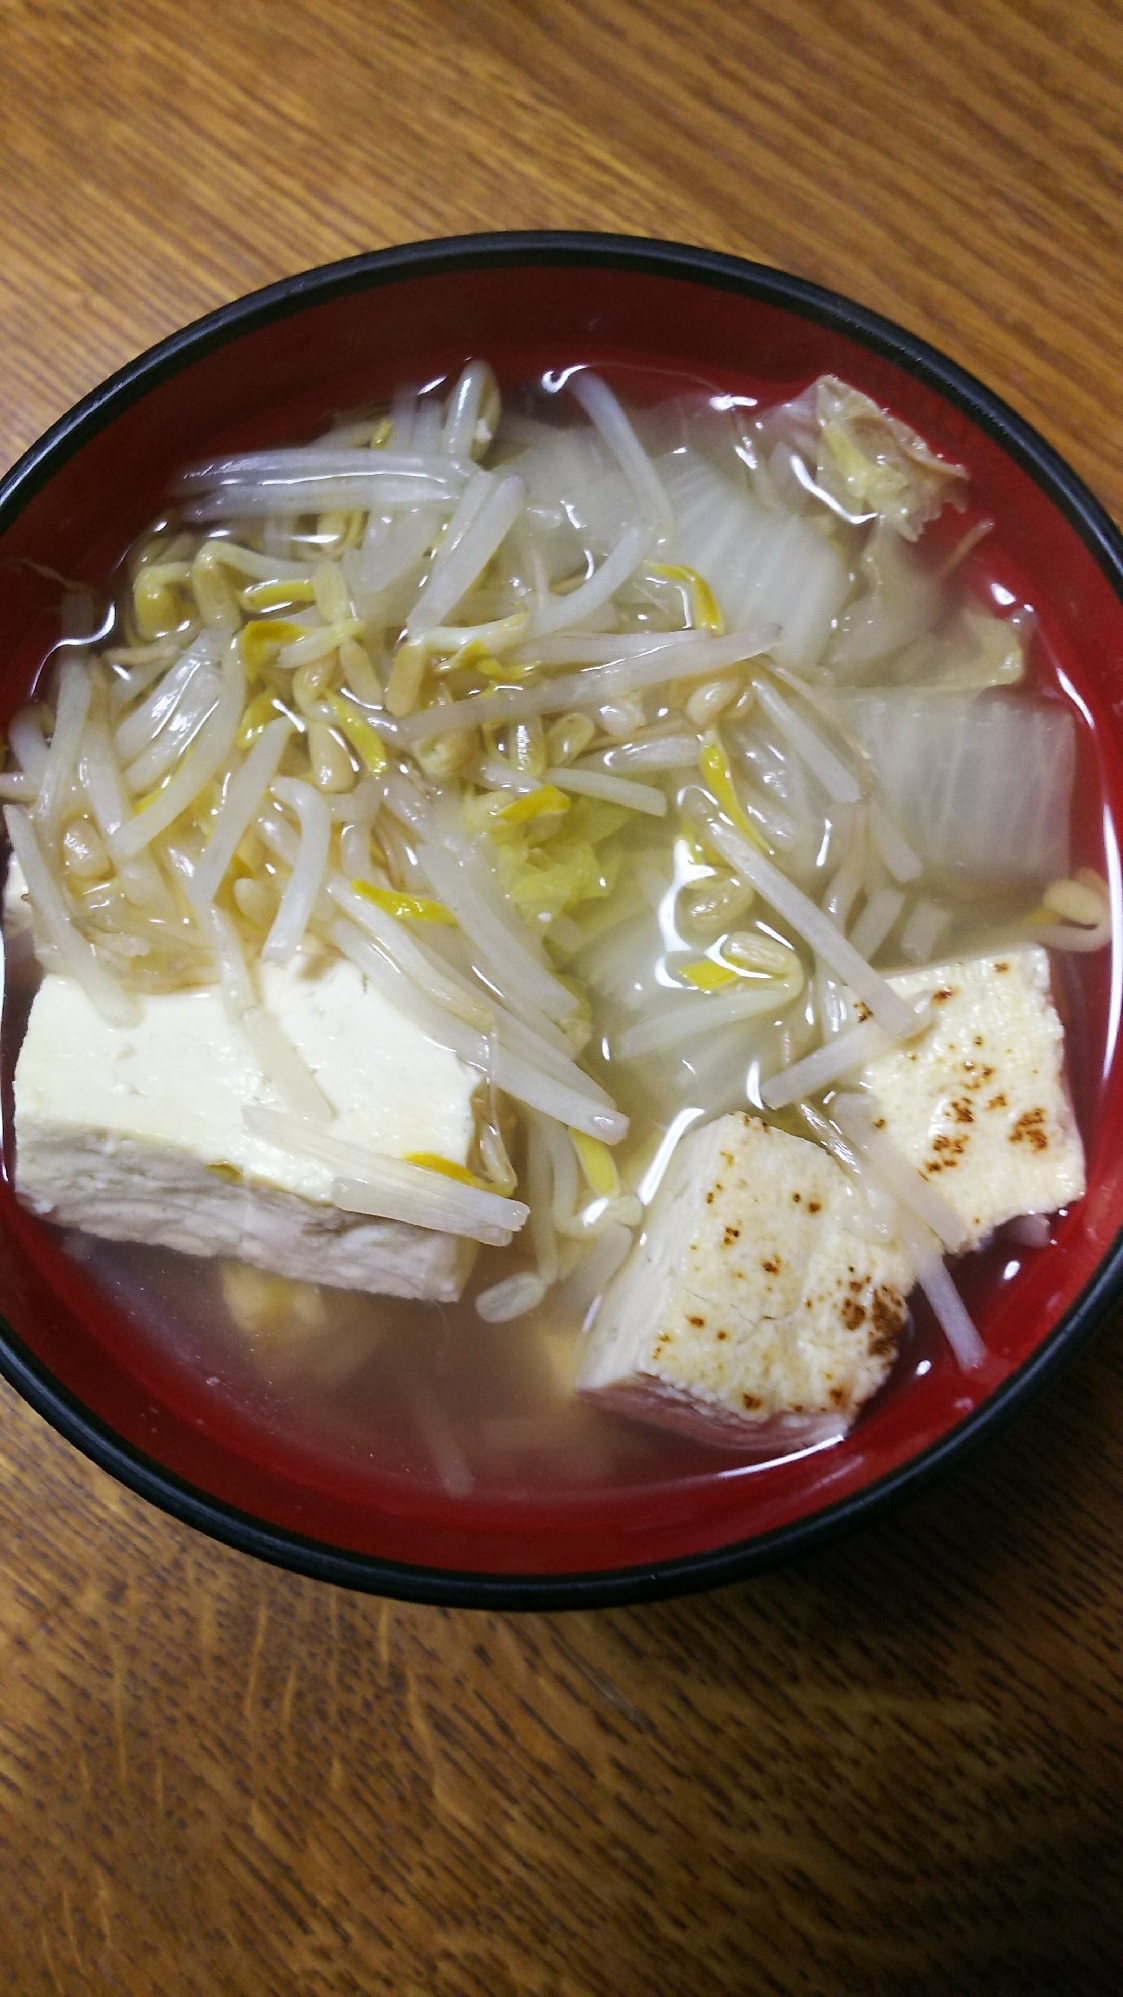 もやし&白菜&豆腐の白だしスープ